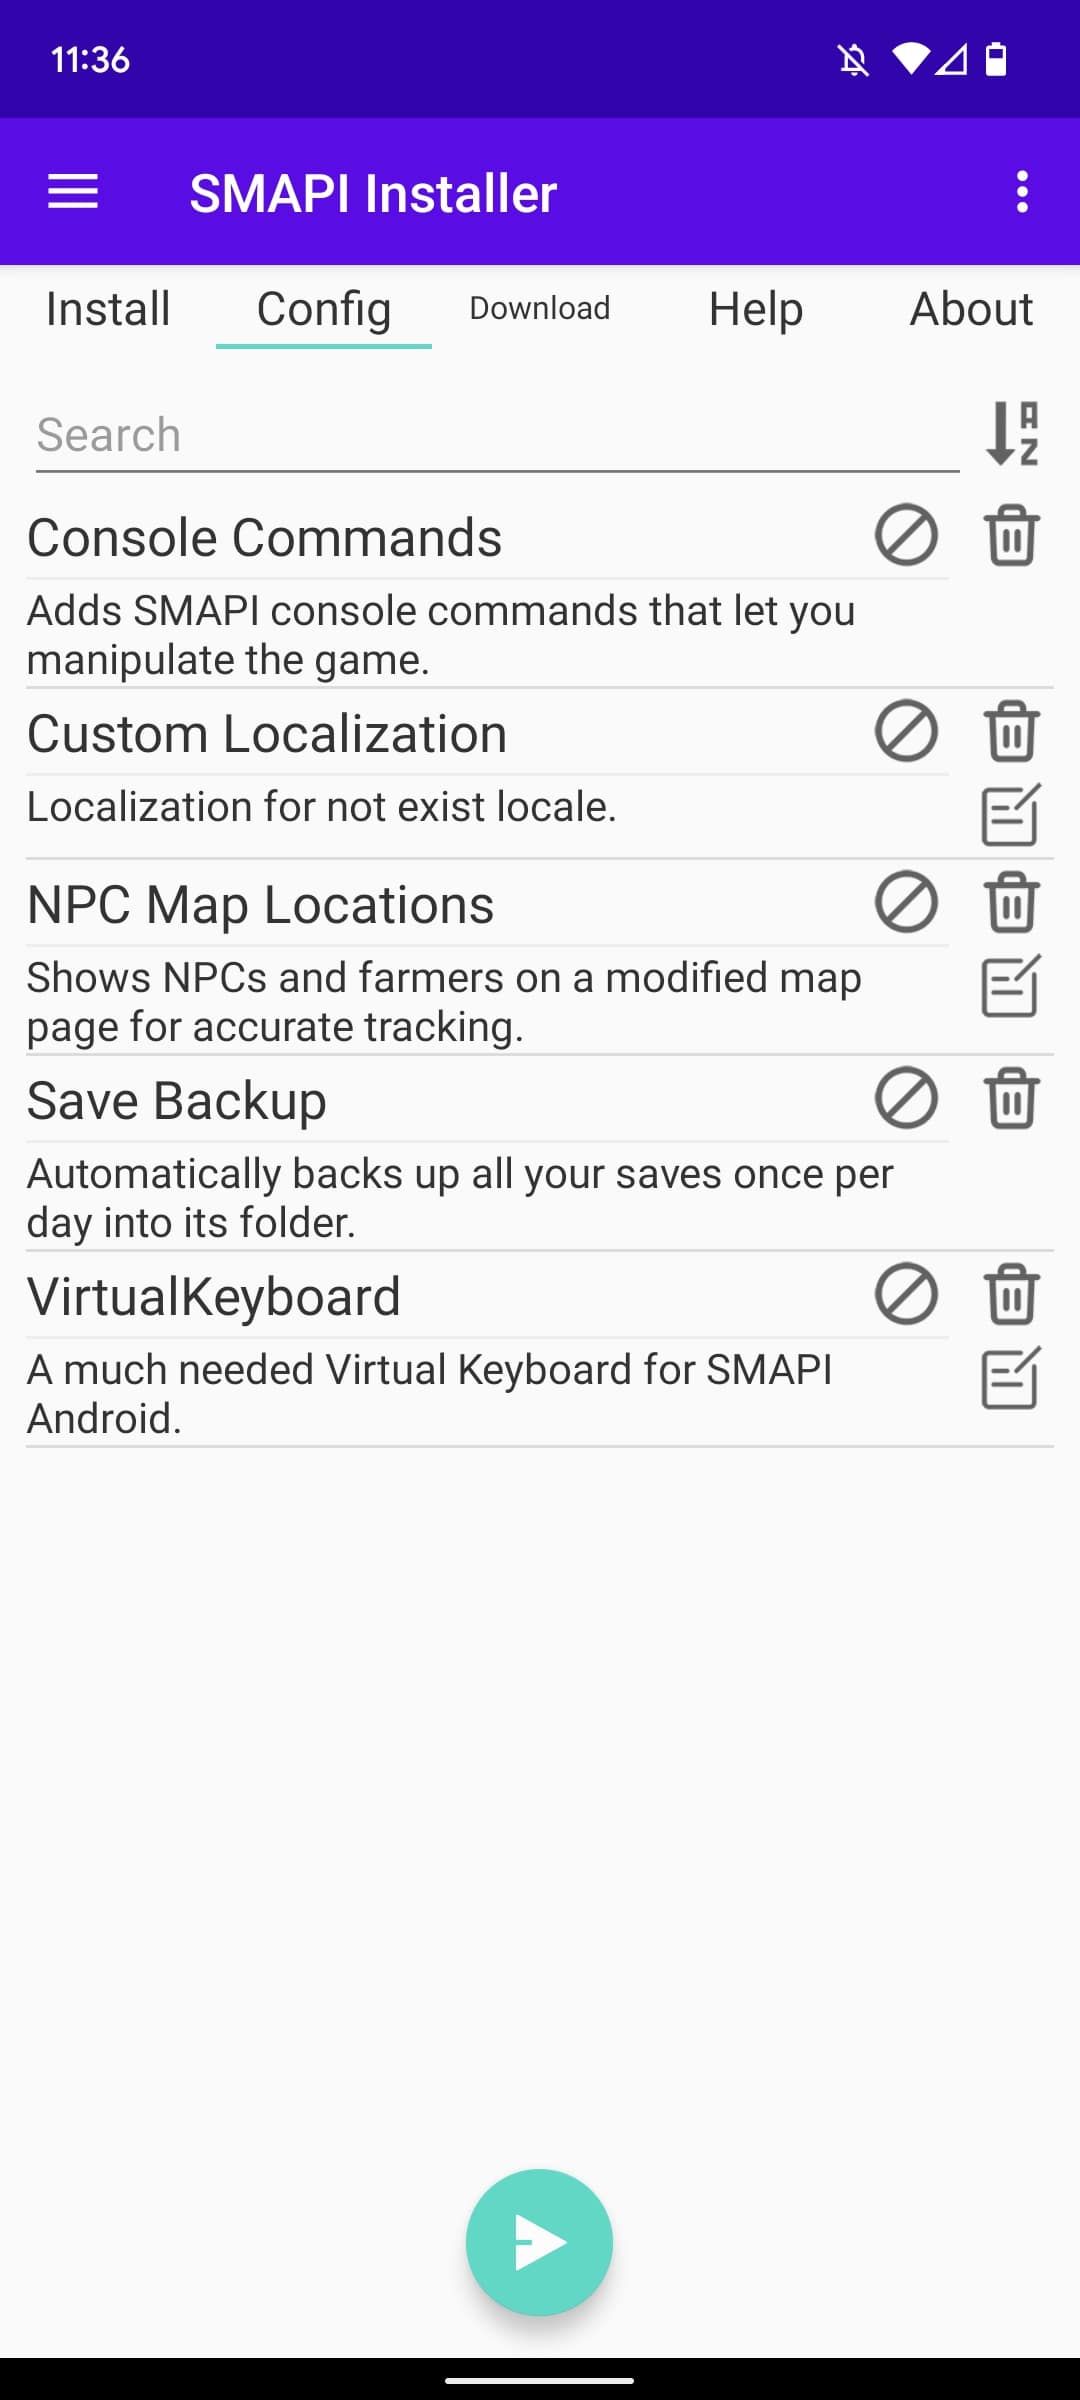 captura de tela da página de instalação do aplicativo SMAPI